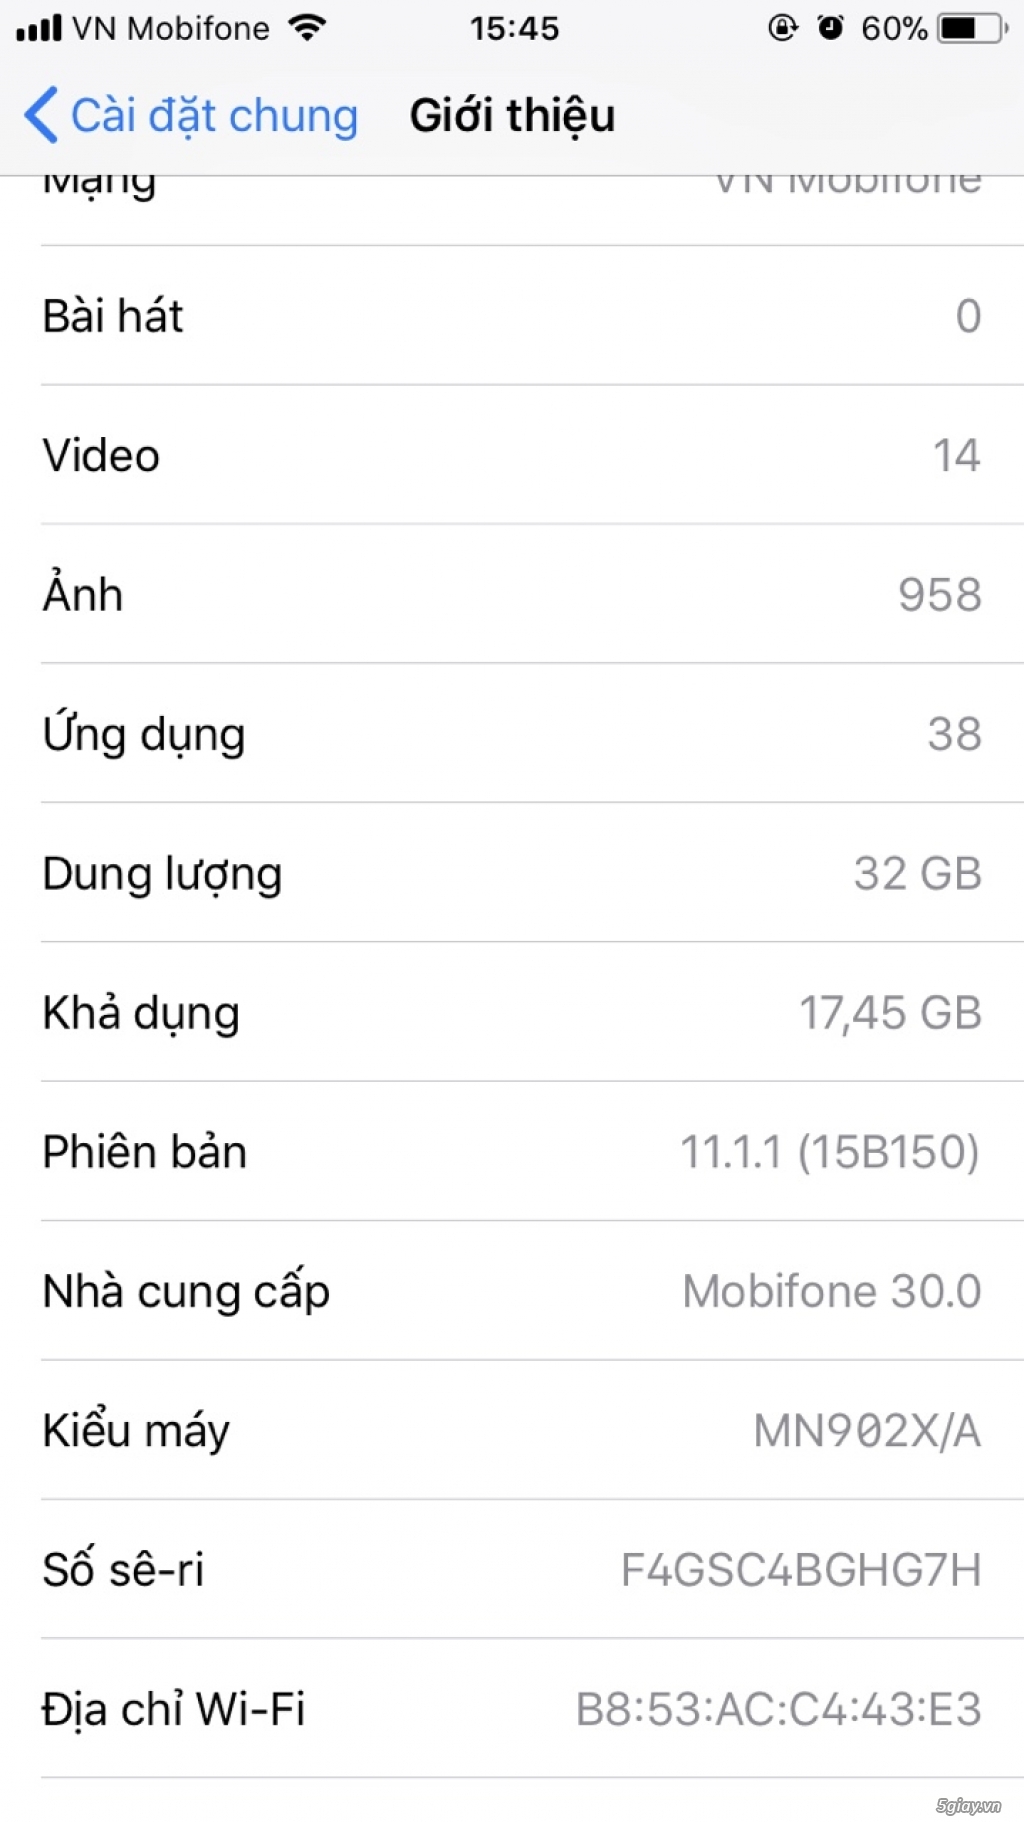 Iphone 7 32Gb Gold ngoại hình 98% - fullbox - 10tr5 - còn bh Apple